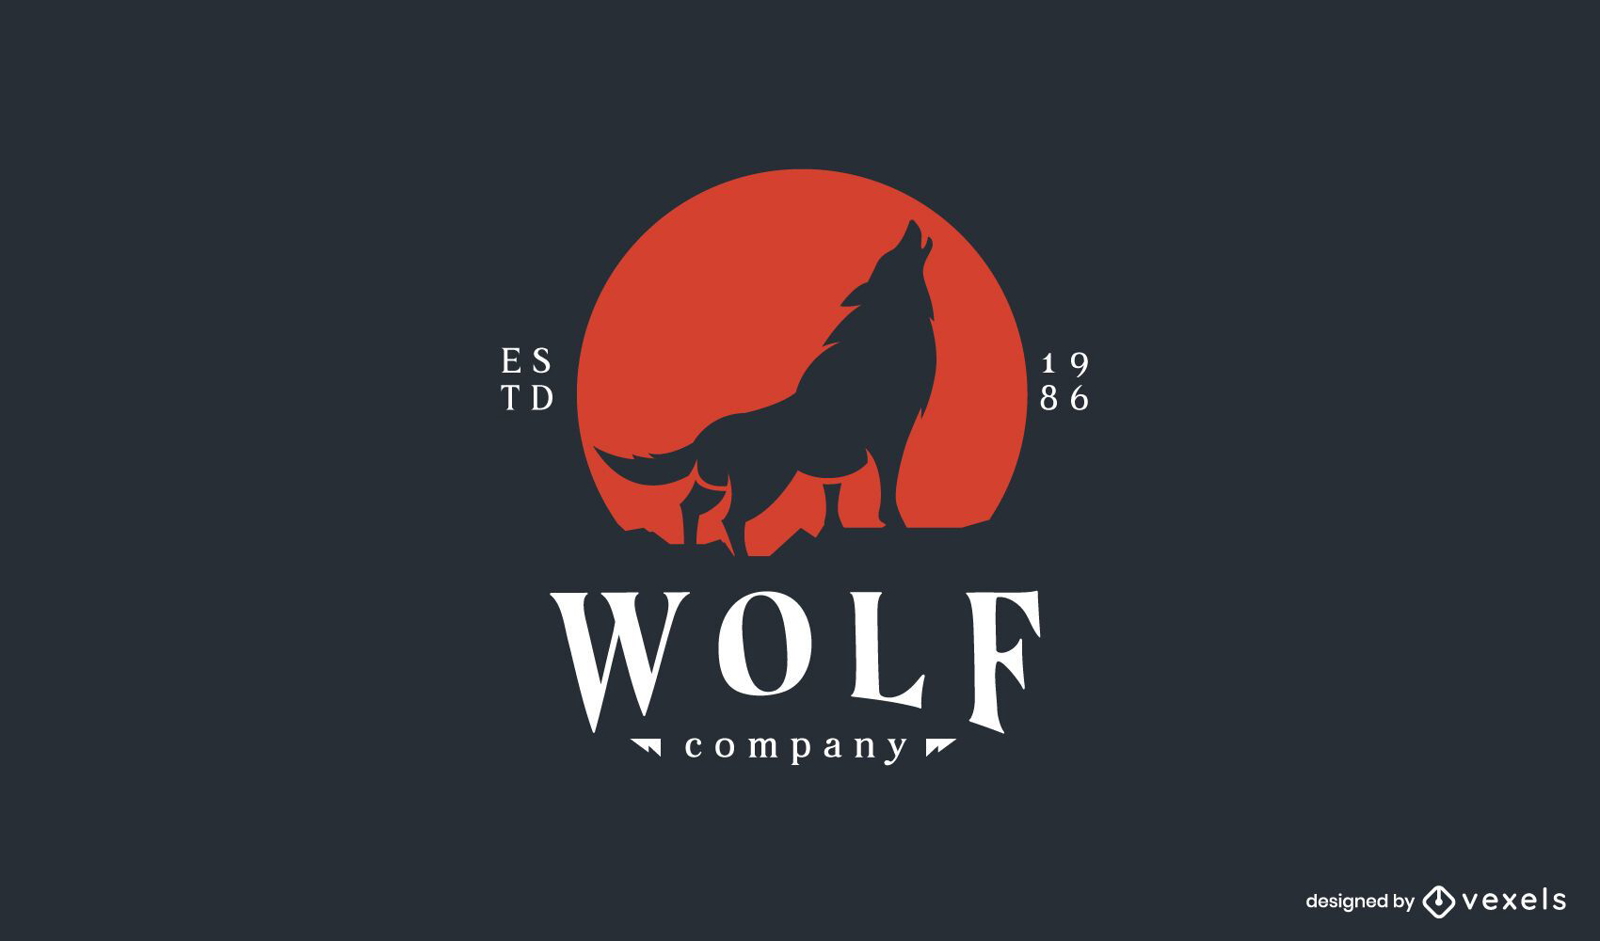 Modelo de logotipo da empresa Wolf